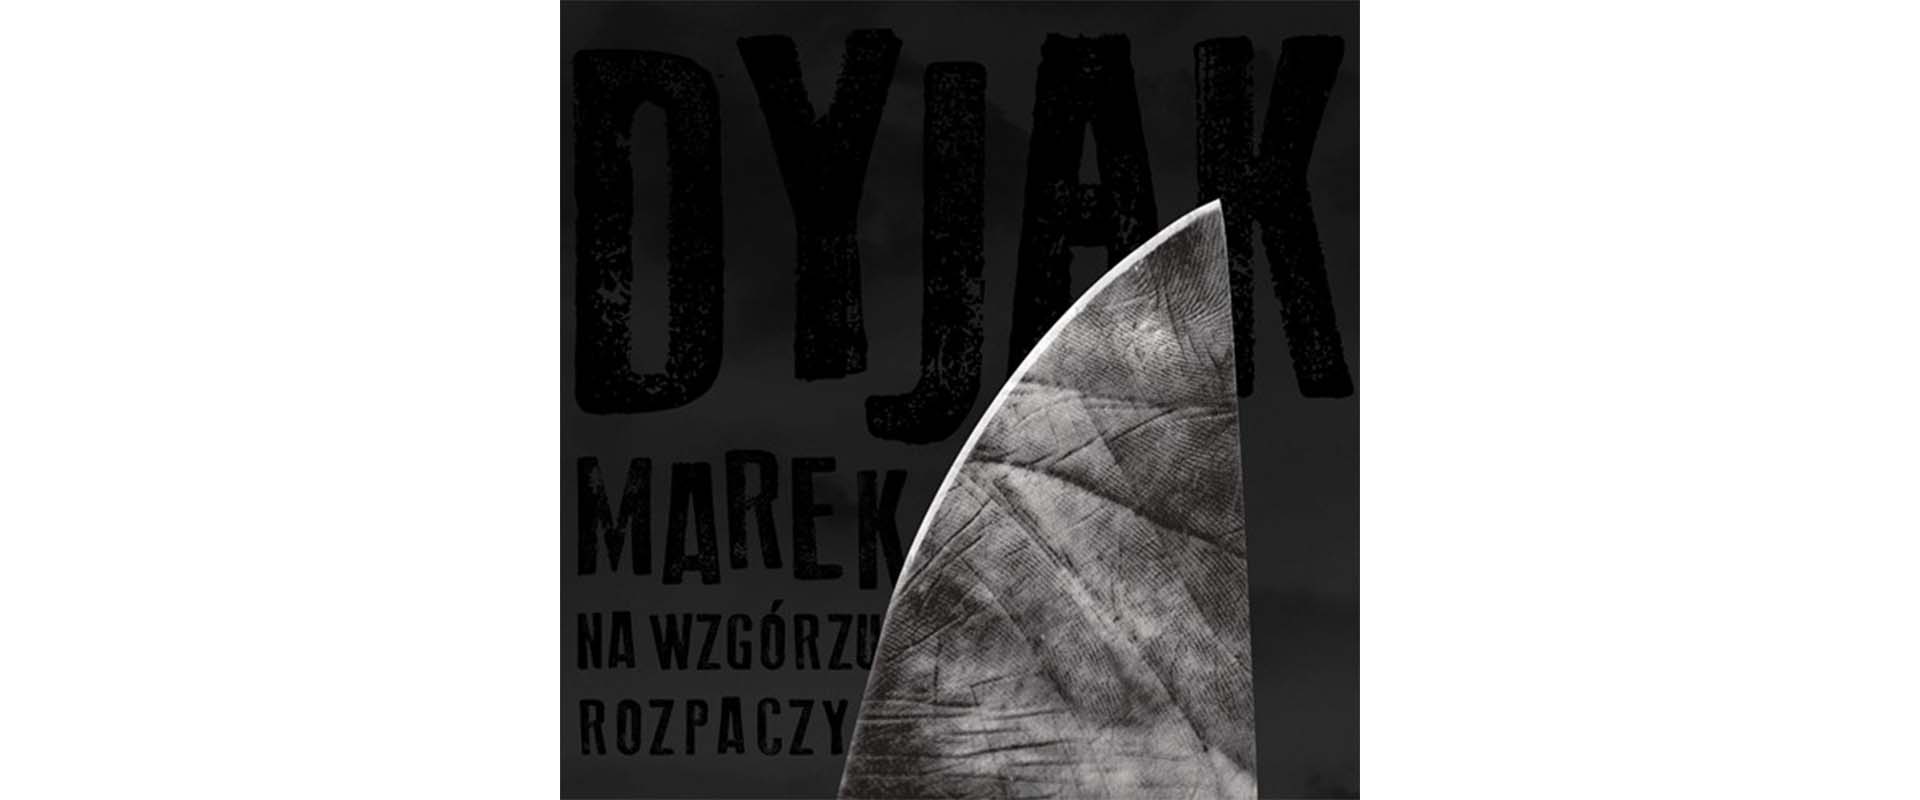 Na wzgórzu rozpaczy - premiera nowej płyty Marka Dyjaka